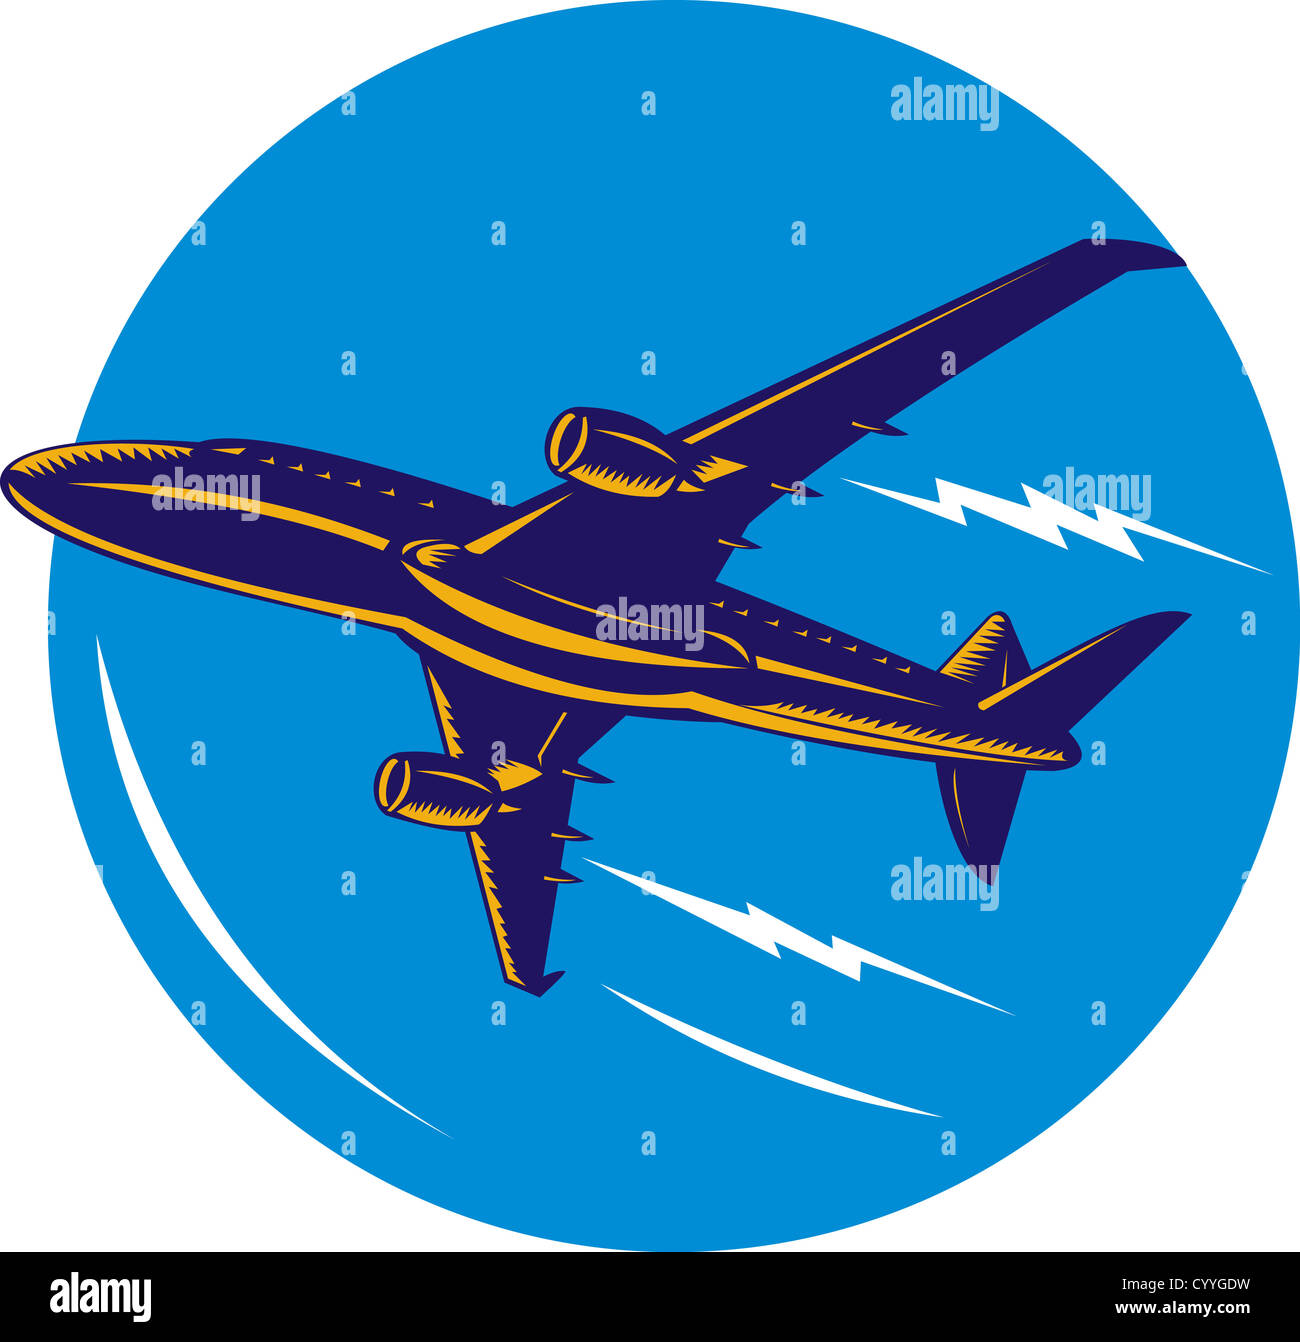 Ilustración de un avión comercial del jet airliner sobre fondo aislado Foto de stock